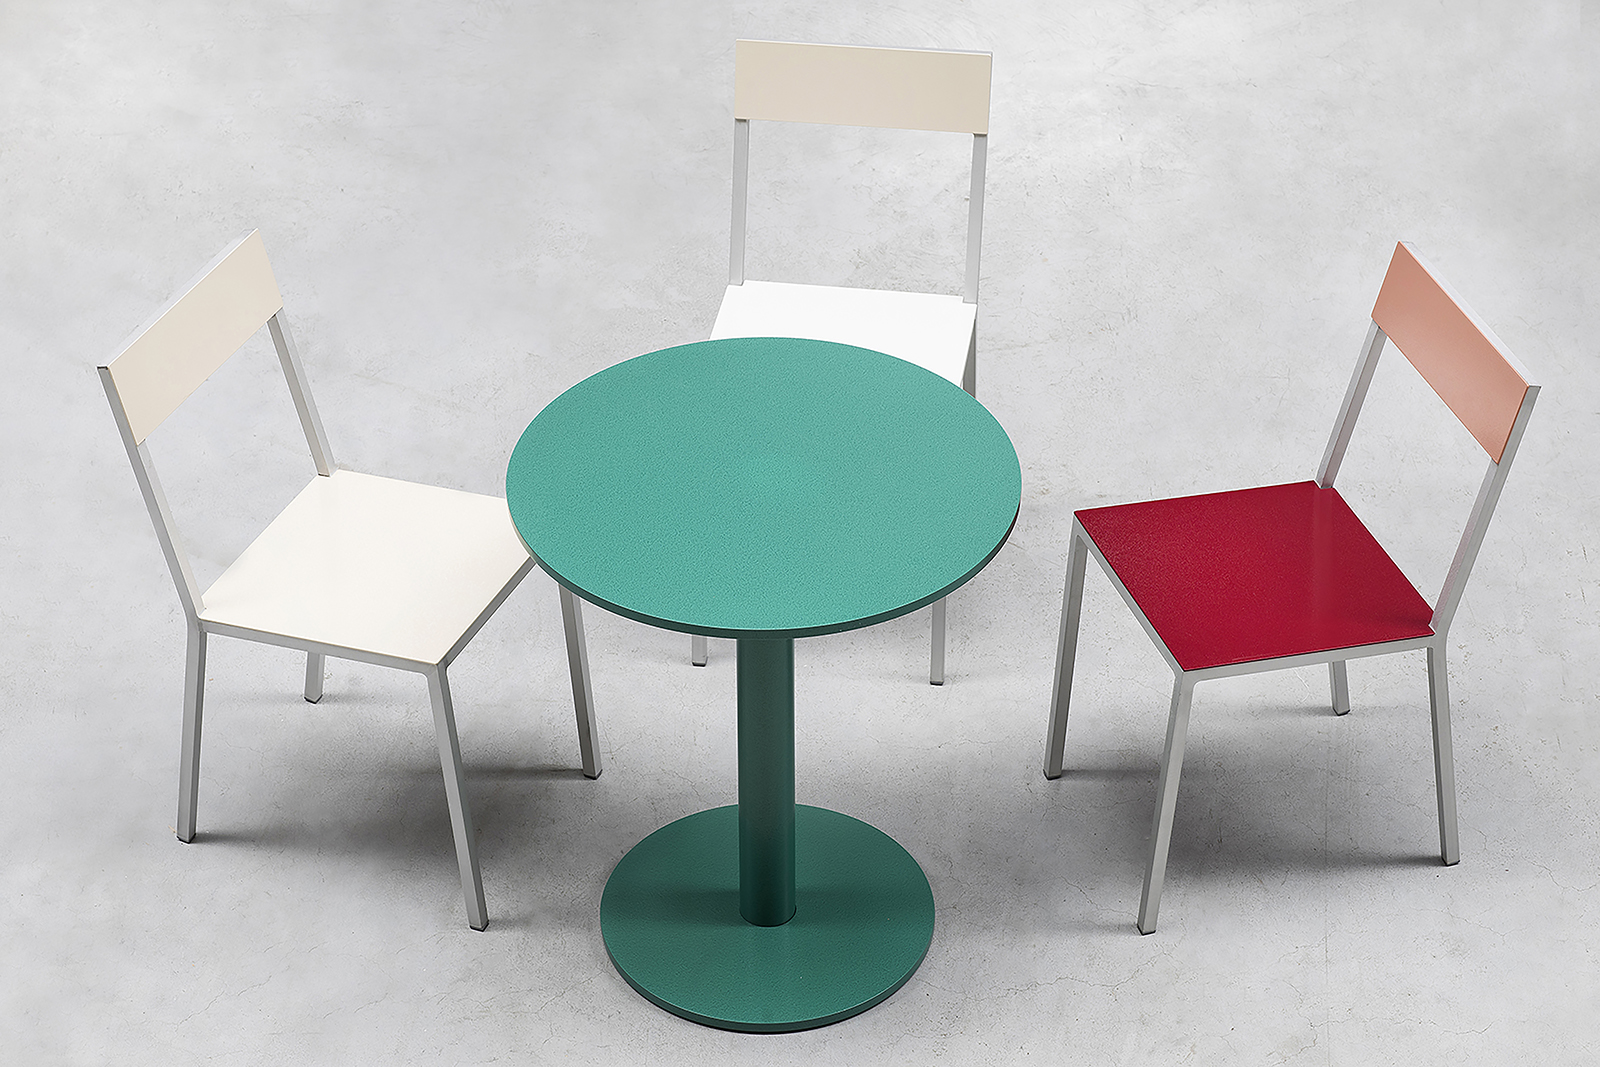 Com 16 cores diferentes, o casal permite que o usuário faça diversas combinações com as cadeiras de alumínio, criando composições coloridas (Foto: Muller van Severen)